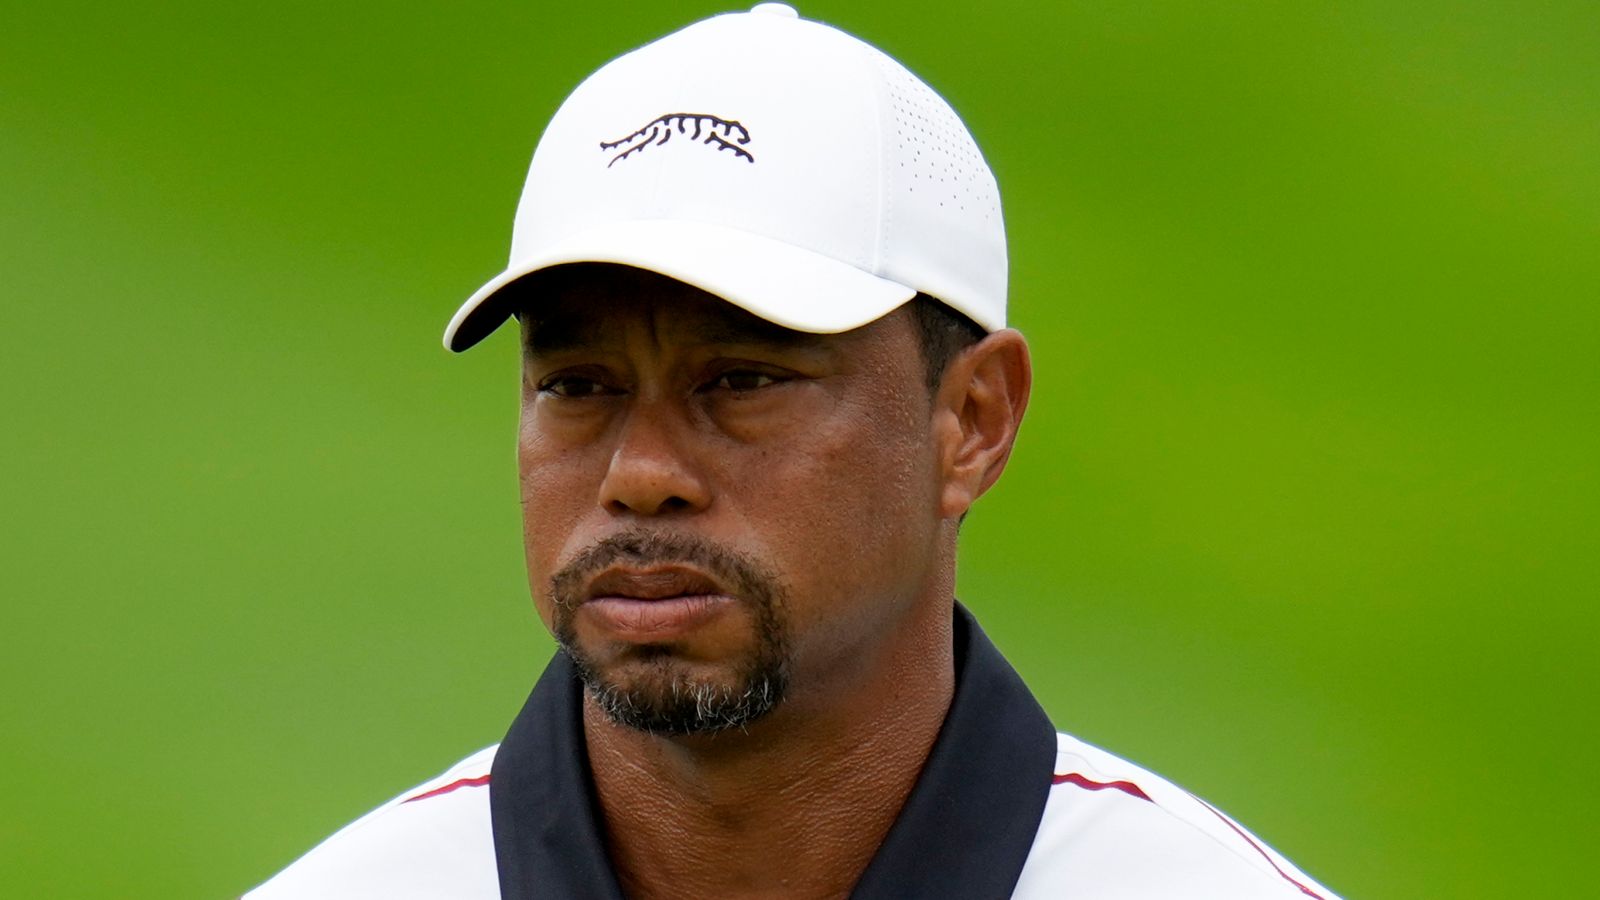 Campeonato de la PGA: Tiger Woods lamenta los errores y la falta de preparación para el torneo después de un importante corte fallido en Valhalla |  Noticias de golf